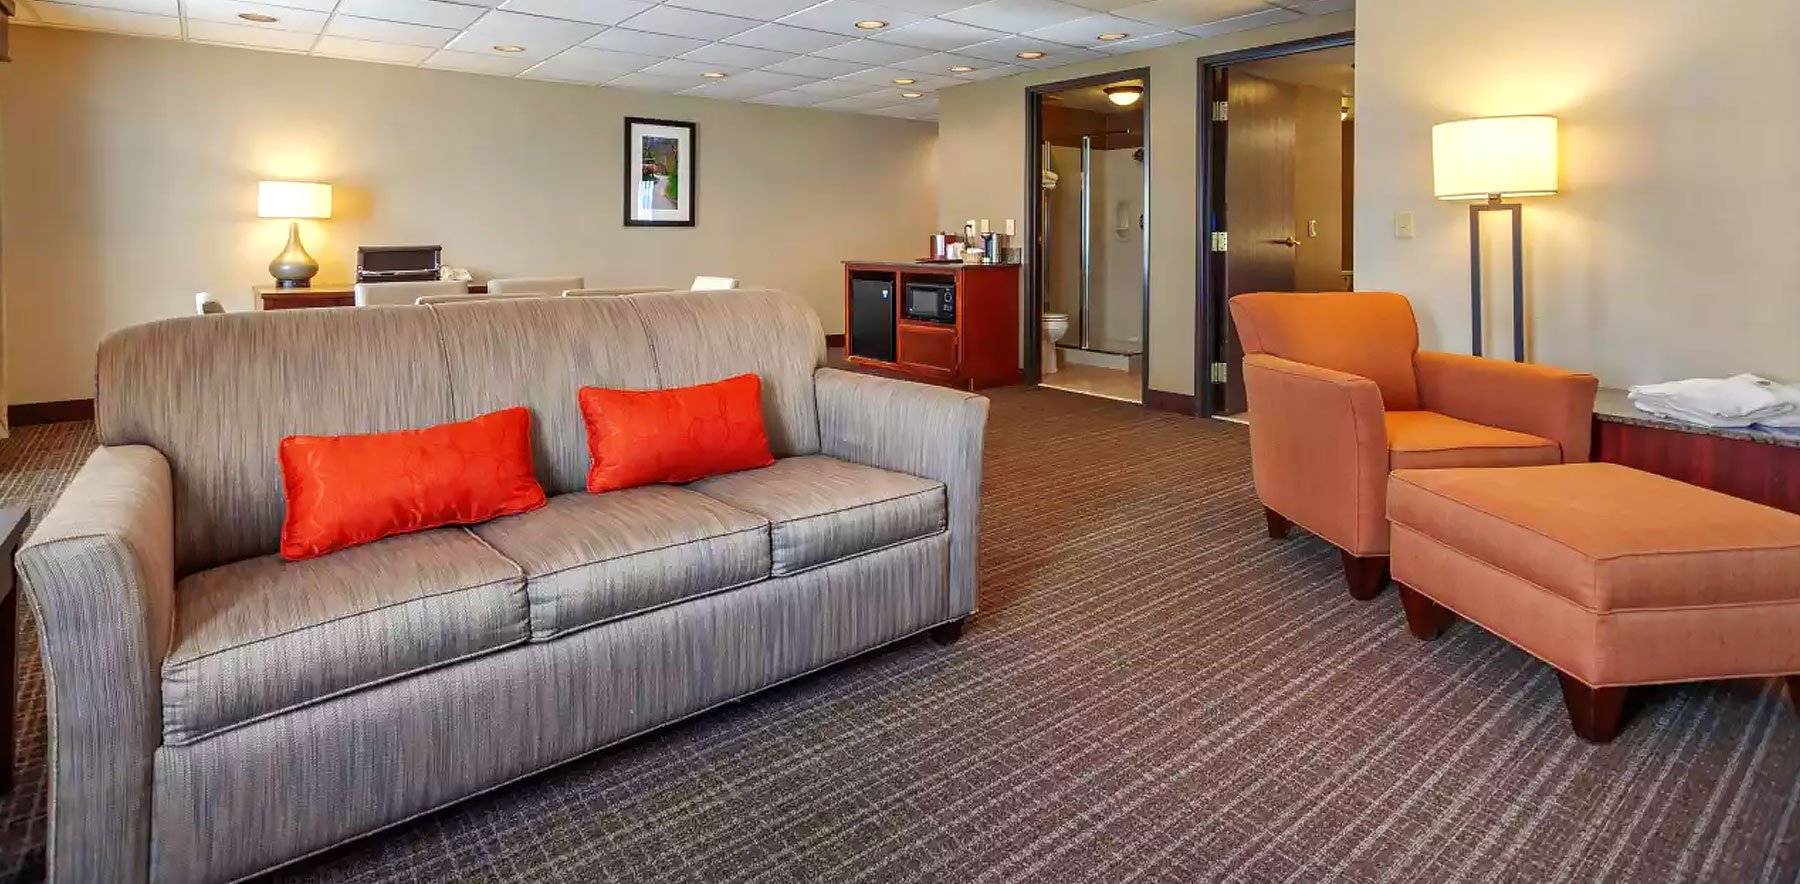 cilia Dårlig faktor smidig Green Bay Hotels | Comfort Suites Green Bay